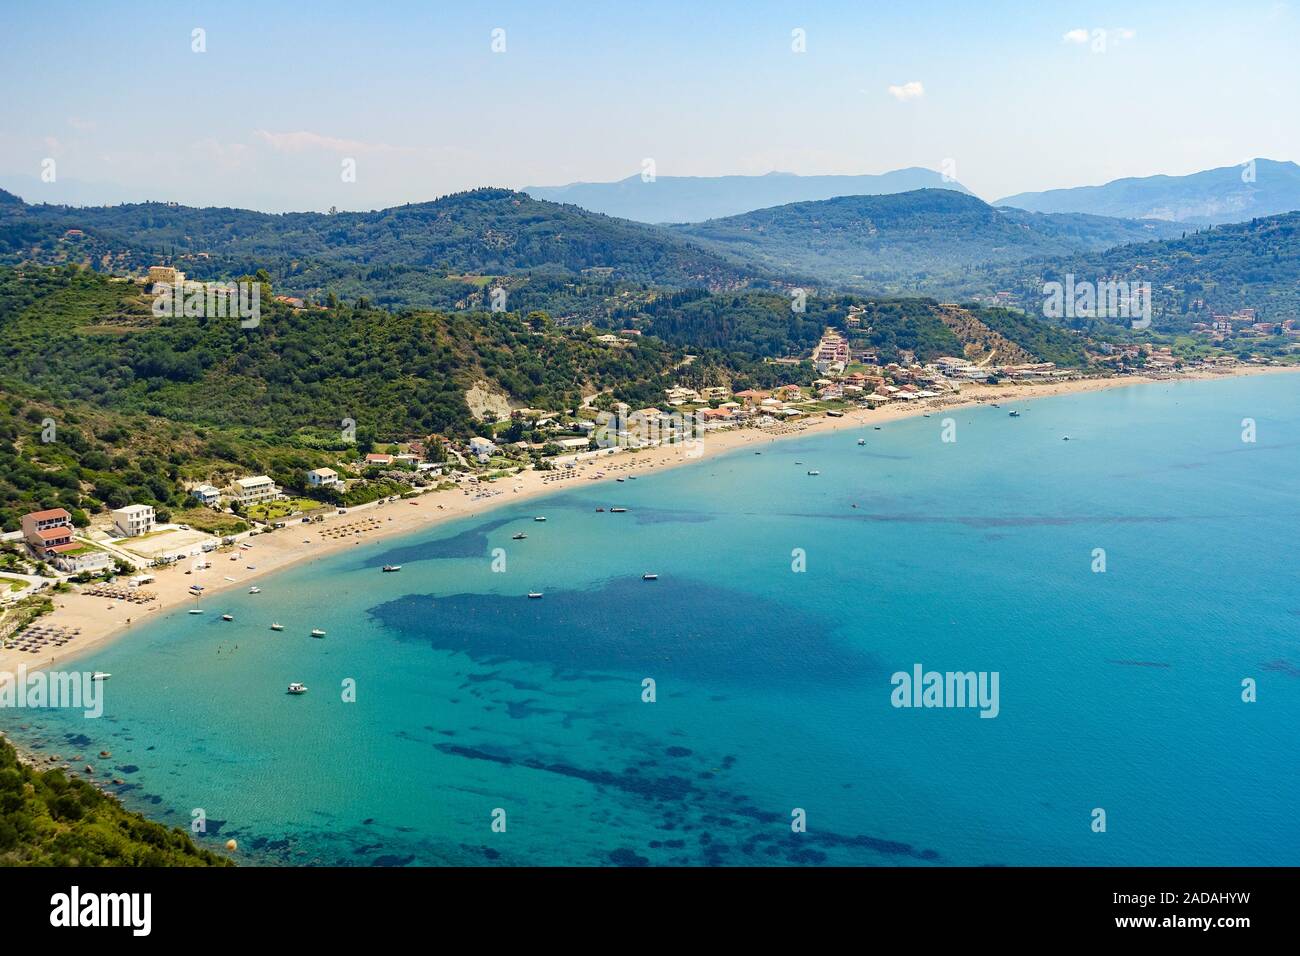 Die Bucht von agions Geoergios Pagi, ein beliebtes Touristenziel, Korfu, Griechenland Stockfoto